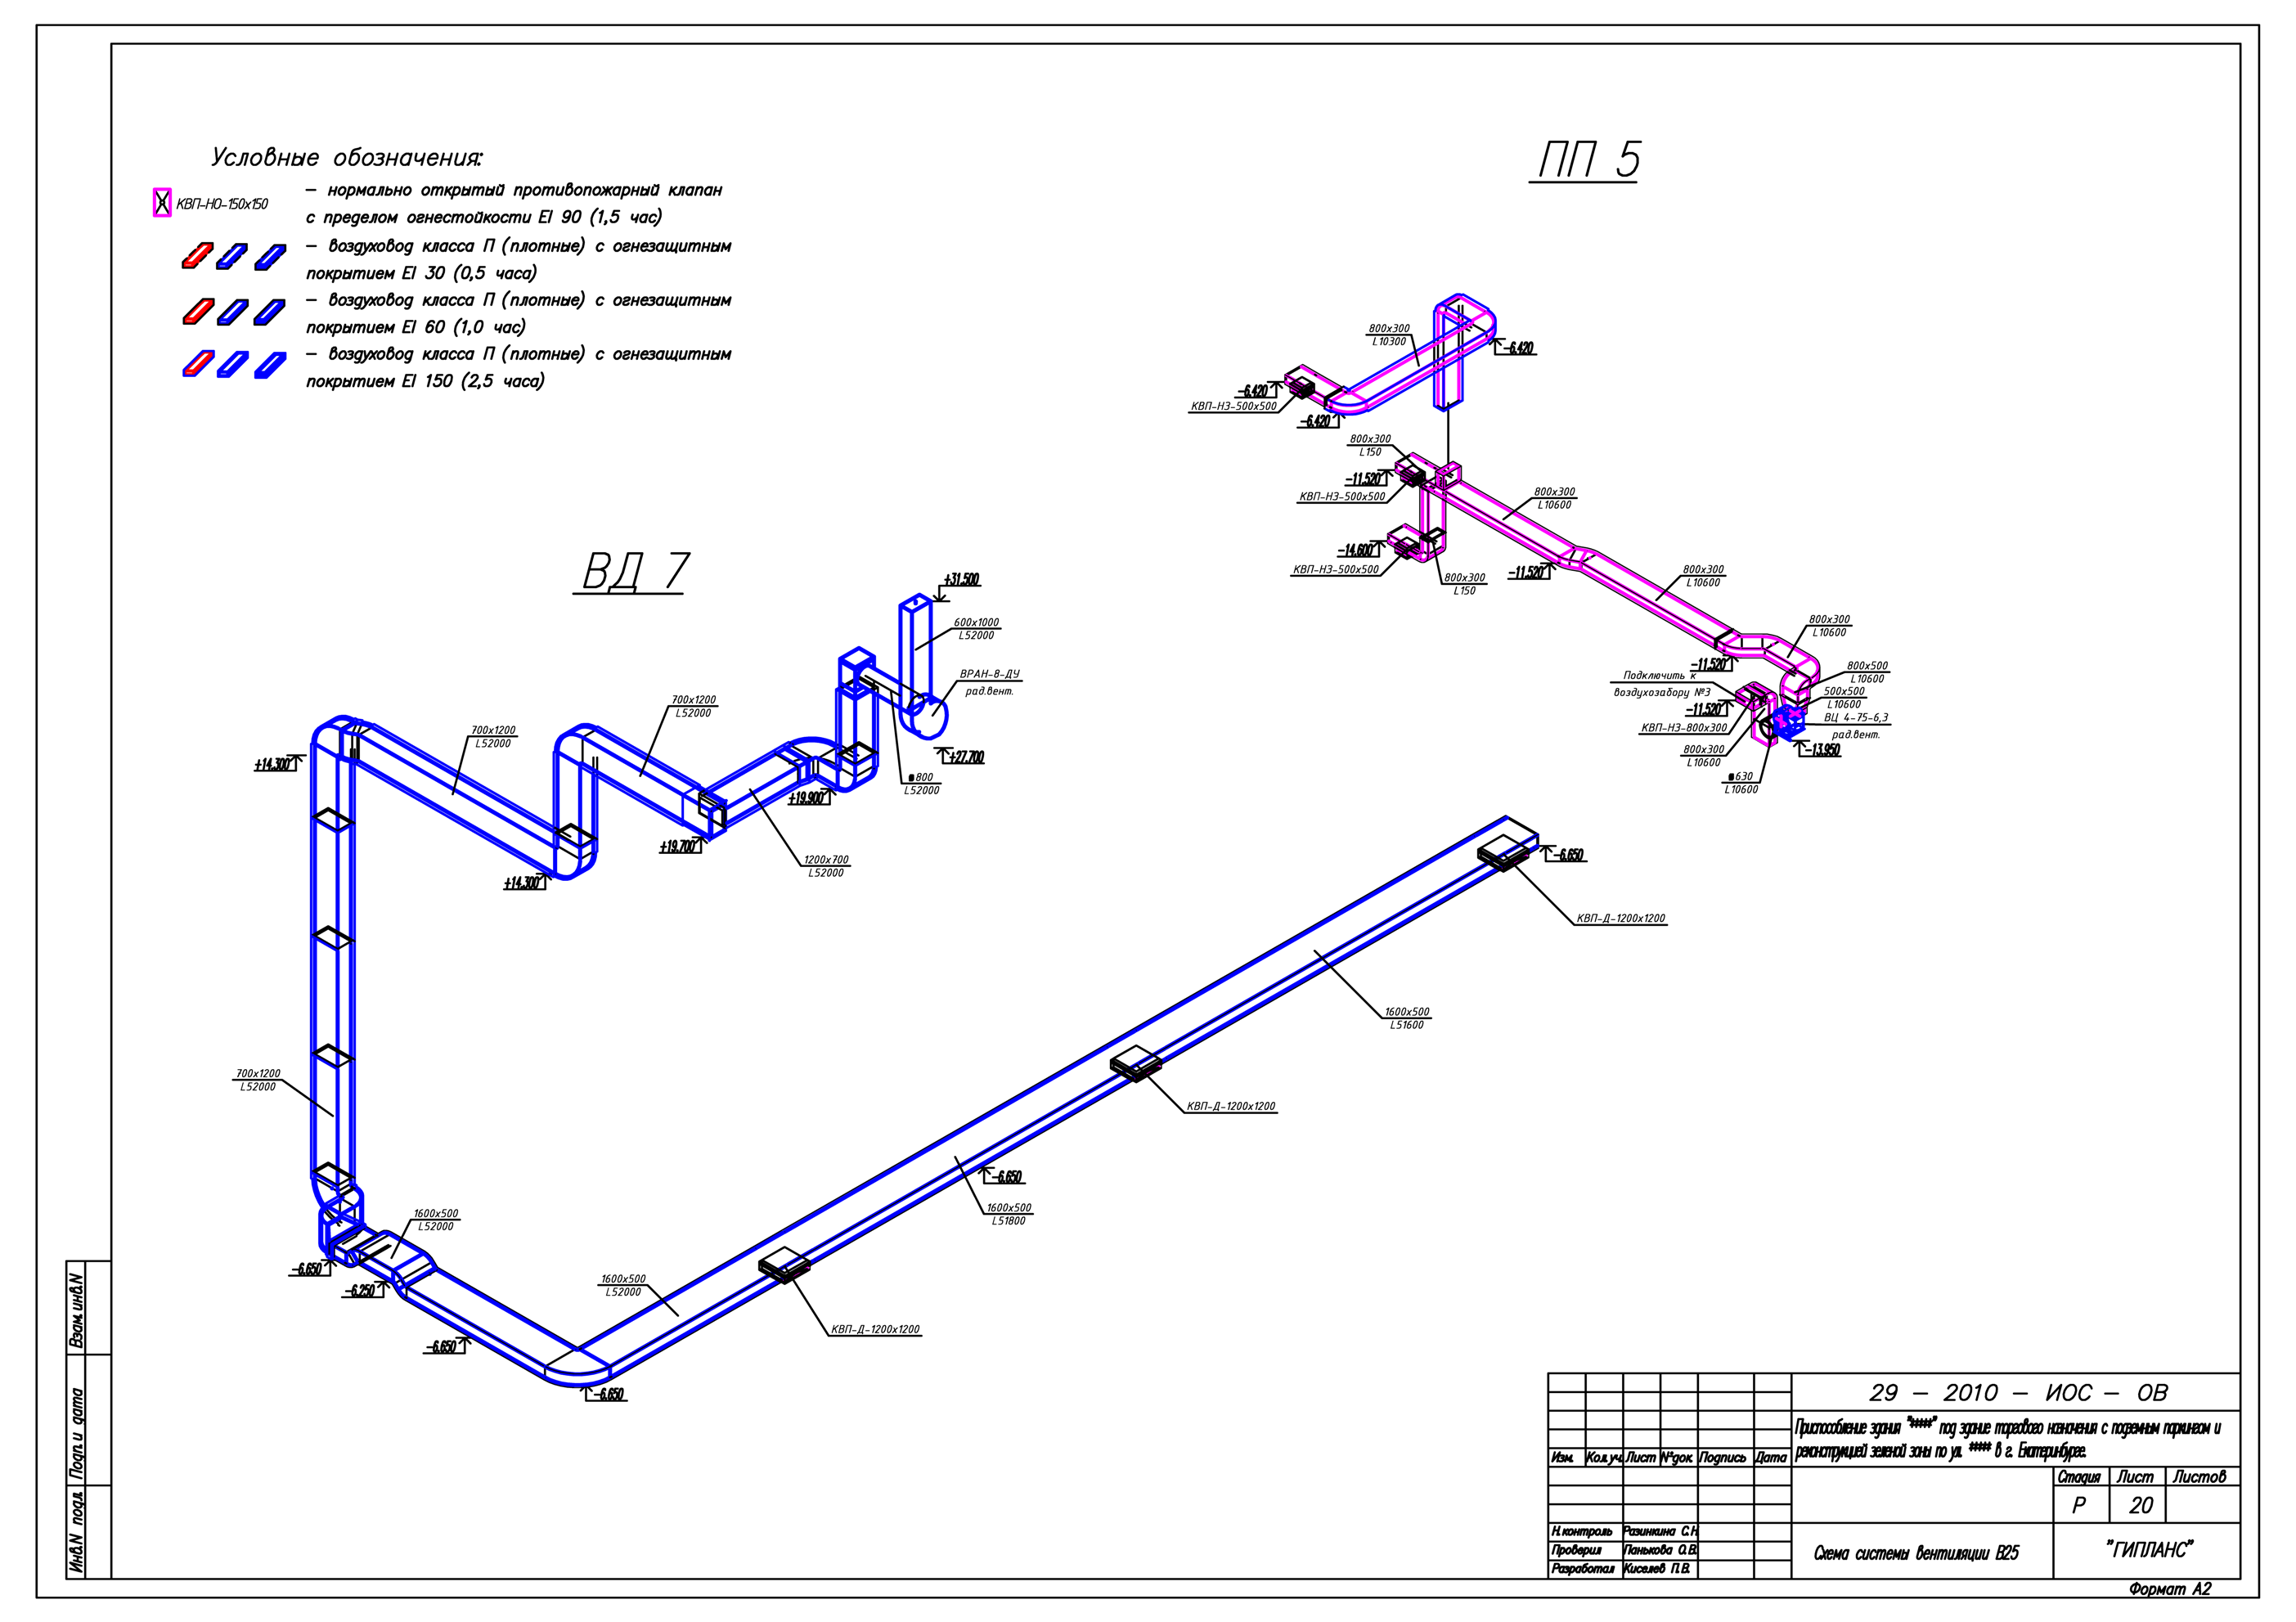 Пд вентиляция. Исполнительная схема водопровода аксонометрия. Чертеж аксонометрической схемы вентиляции. Исполнительная схема трубопровода аксонометрия. Схема сварных стыков в аксонометрии.